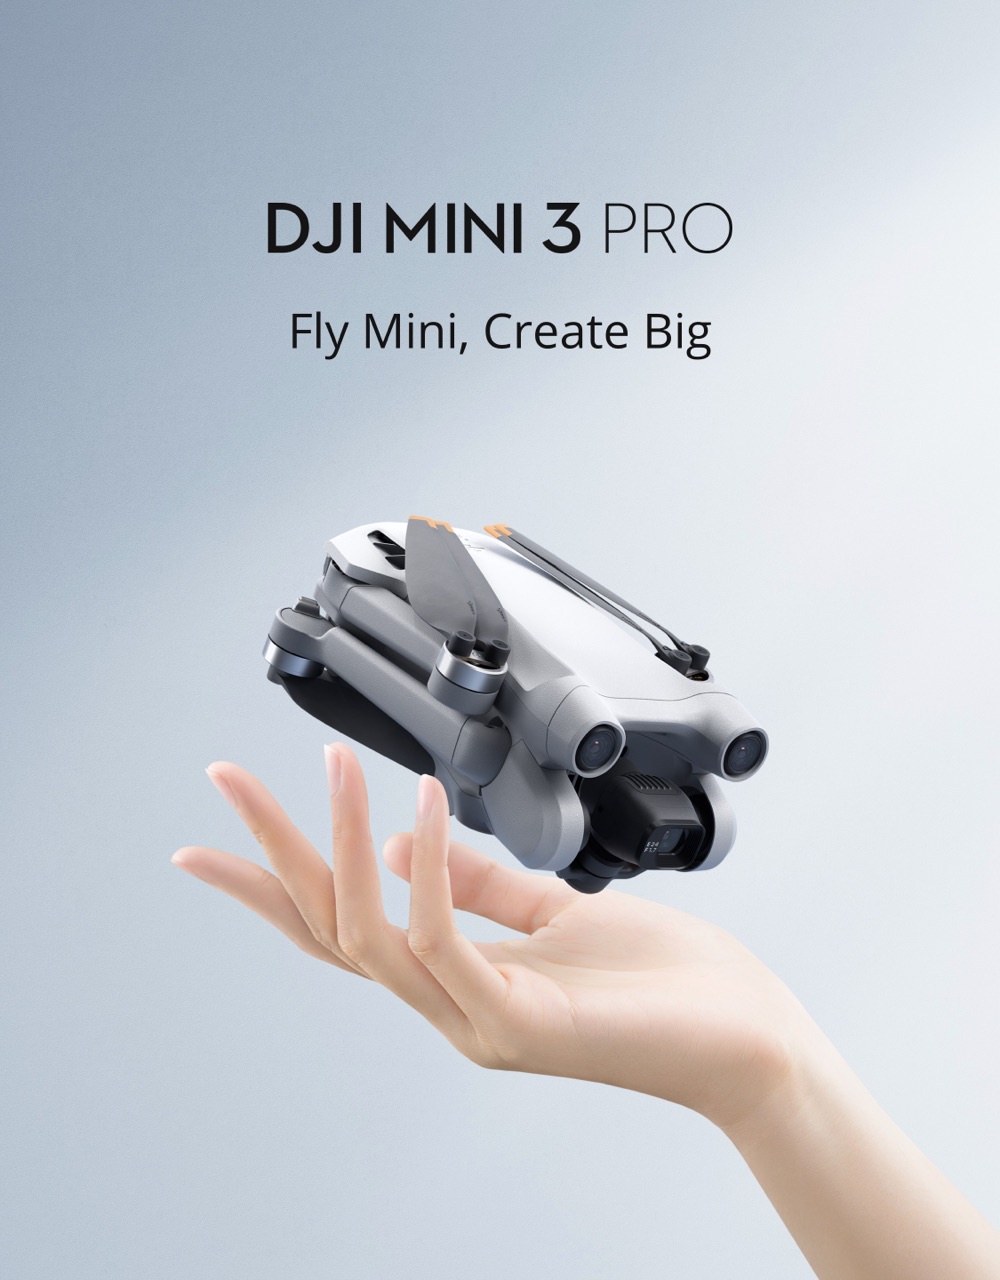 มุมมองเพิ่มเติมของสินค้า DJI MINI 3 Pro โดรนมินิกล้องขั้นสูง พับเก็บได้ น้ำหนักเบา พกพาสะดวก มาพร้อมกับเลนส์ถ่ายภาพในแนวตั้ง